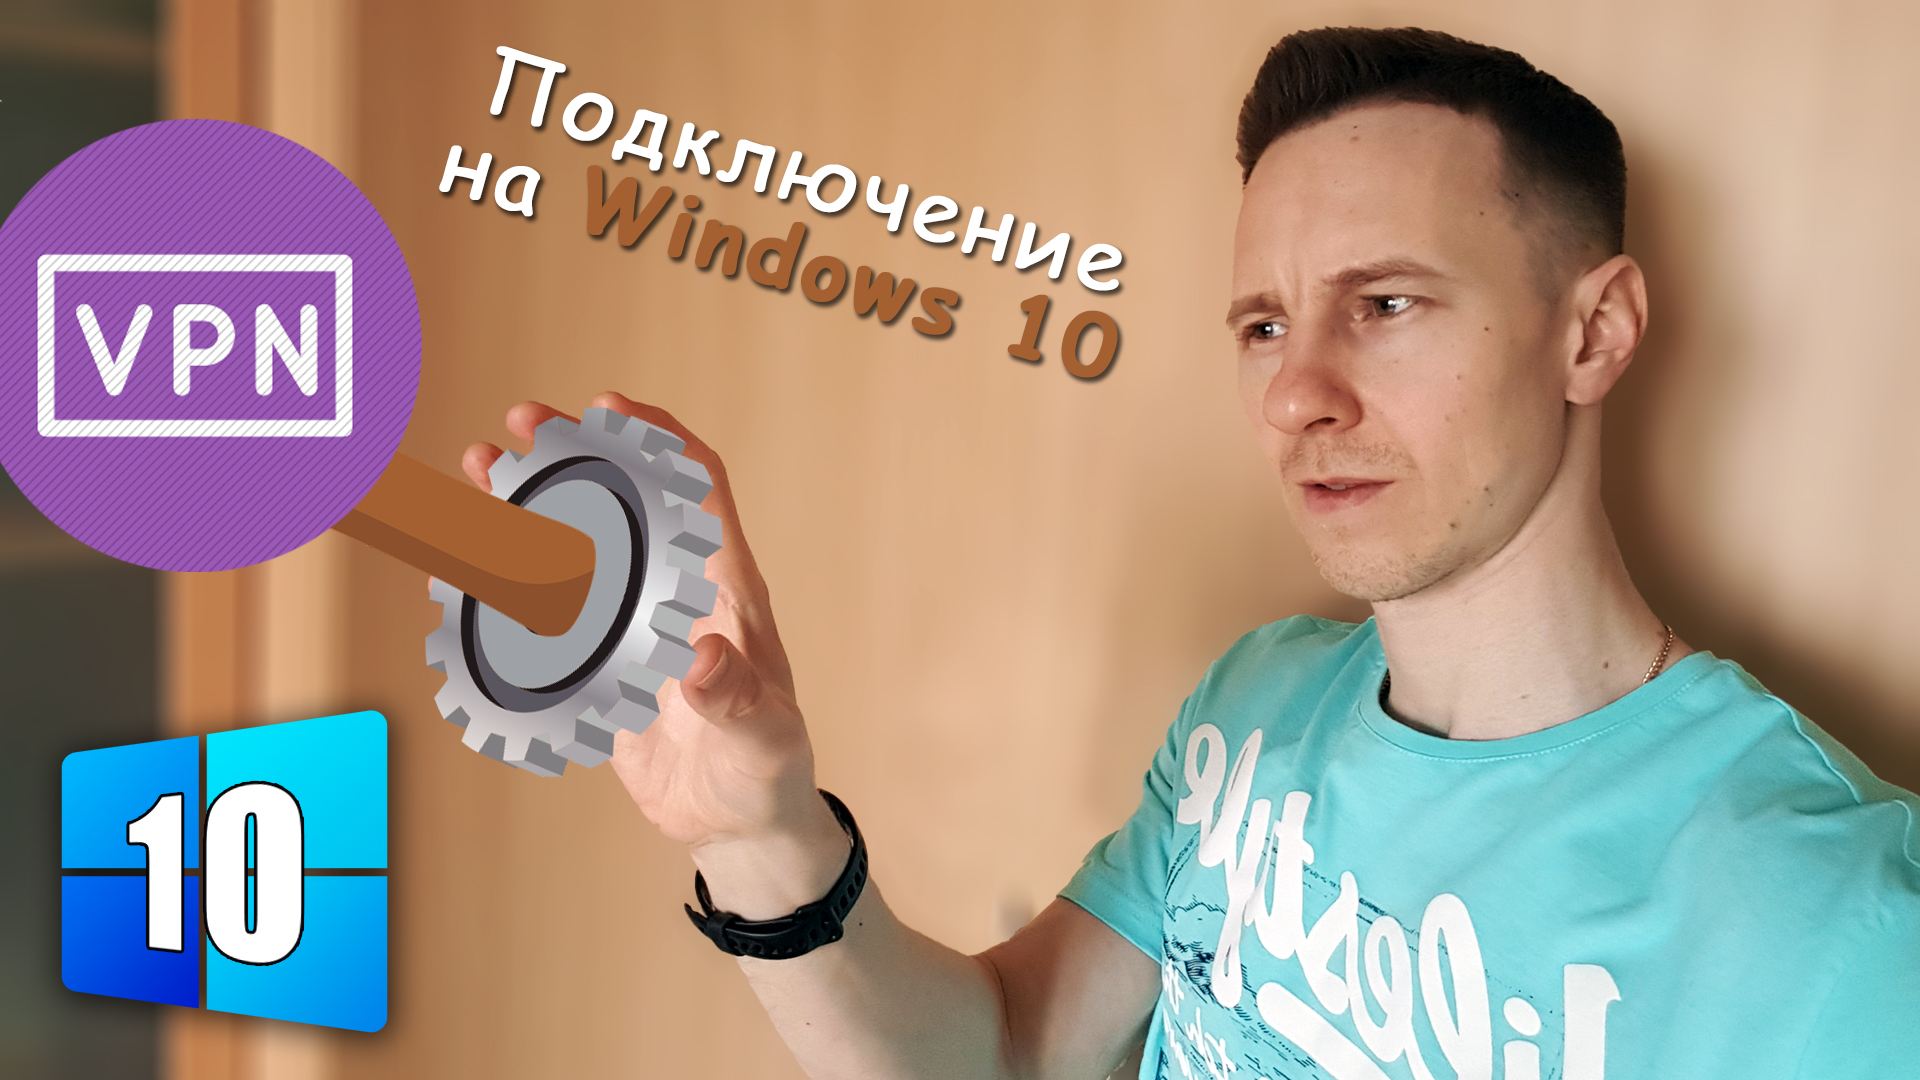 Молодой парень поворачивает шестеренку, иконка VPN, цифра, текст о подключении ВПН на Windows 10